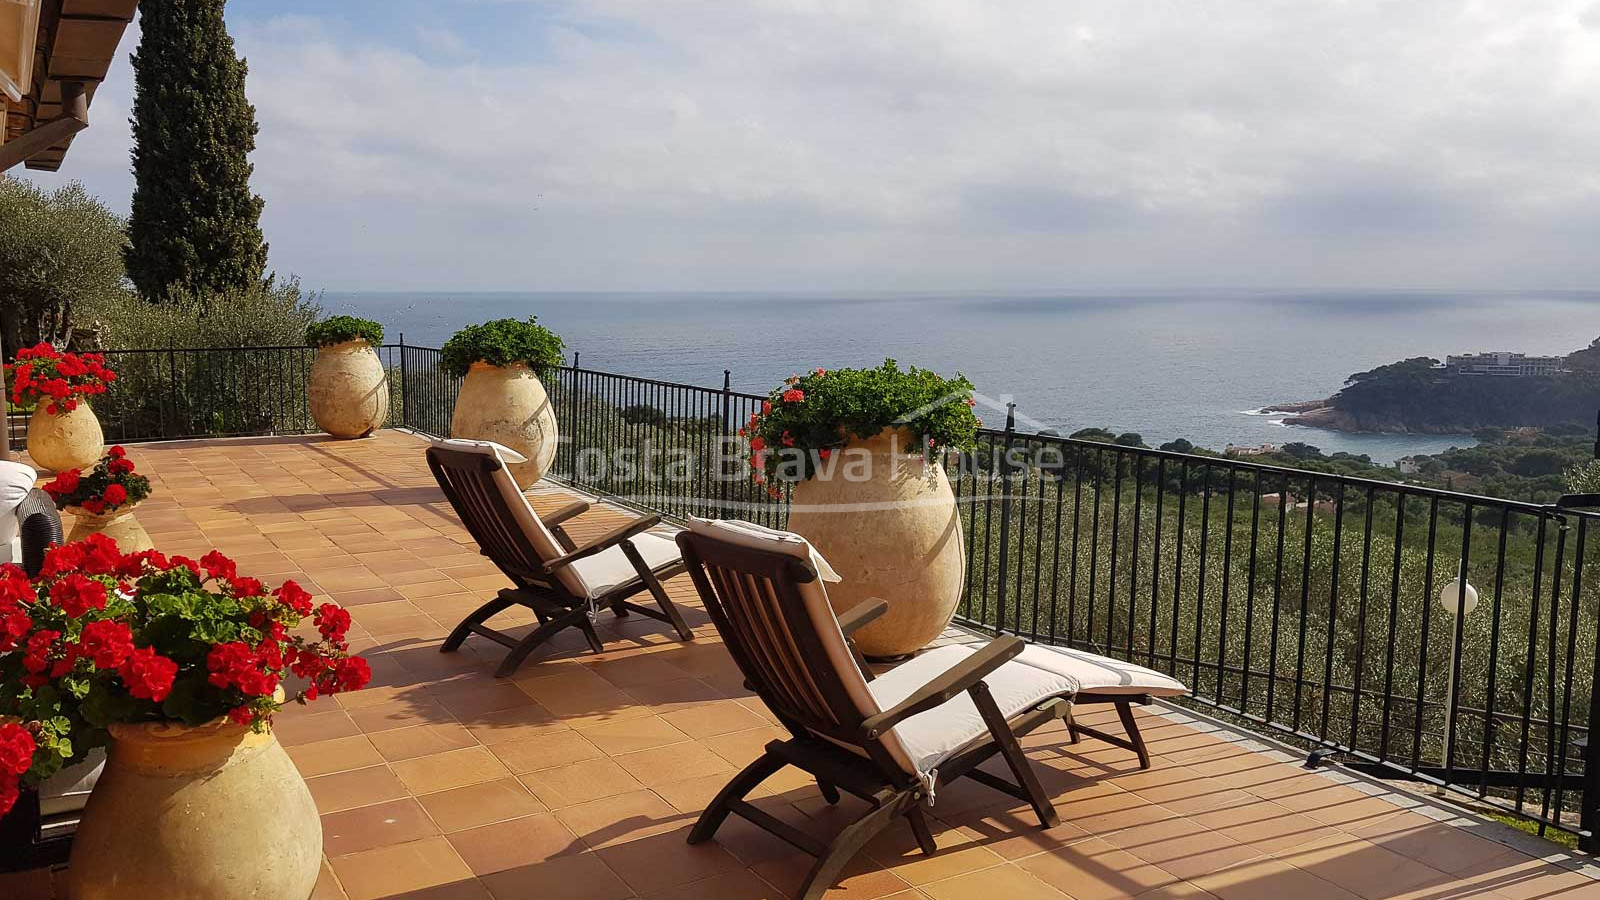 Impressionant vila de luxe amb fantàstiques vistes a la mar en venda a Aiguablava (Begur)